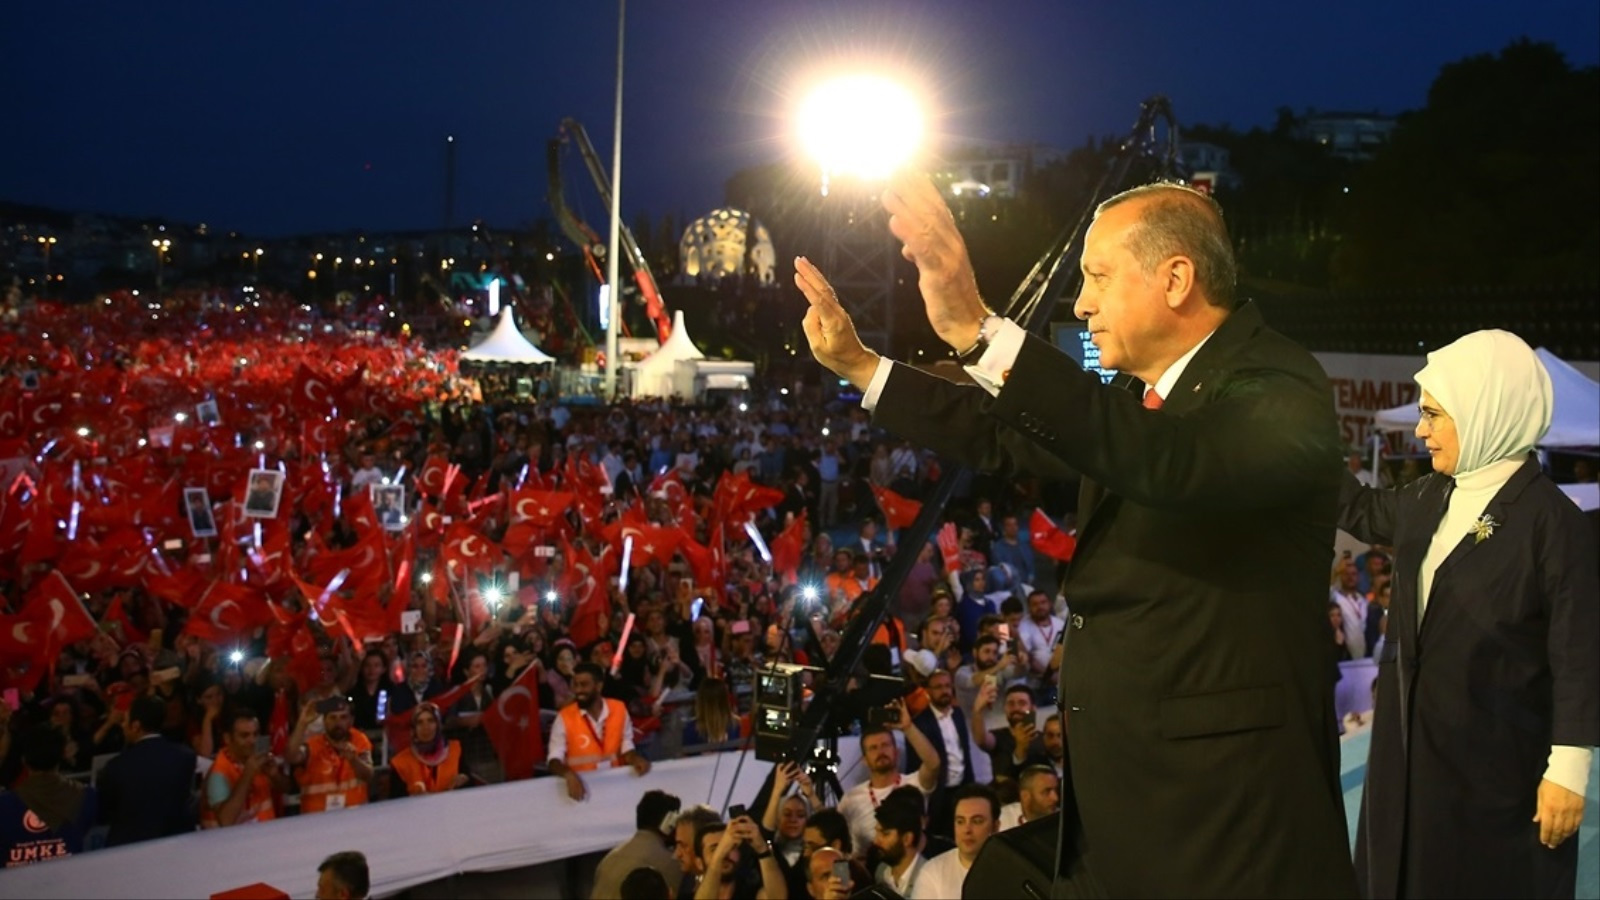  الجمهورية التركية الحديثة؛ جمهورية بدأت علمانية متطرفة وأراد أردوغان وحزبه أن تكون جمهورية ديمقراطية متصالحة مع هويتها الإسلامية وتاريخها